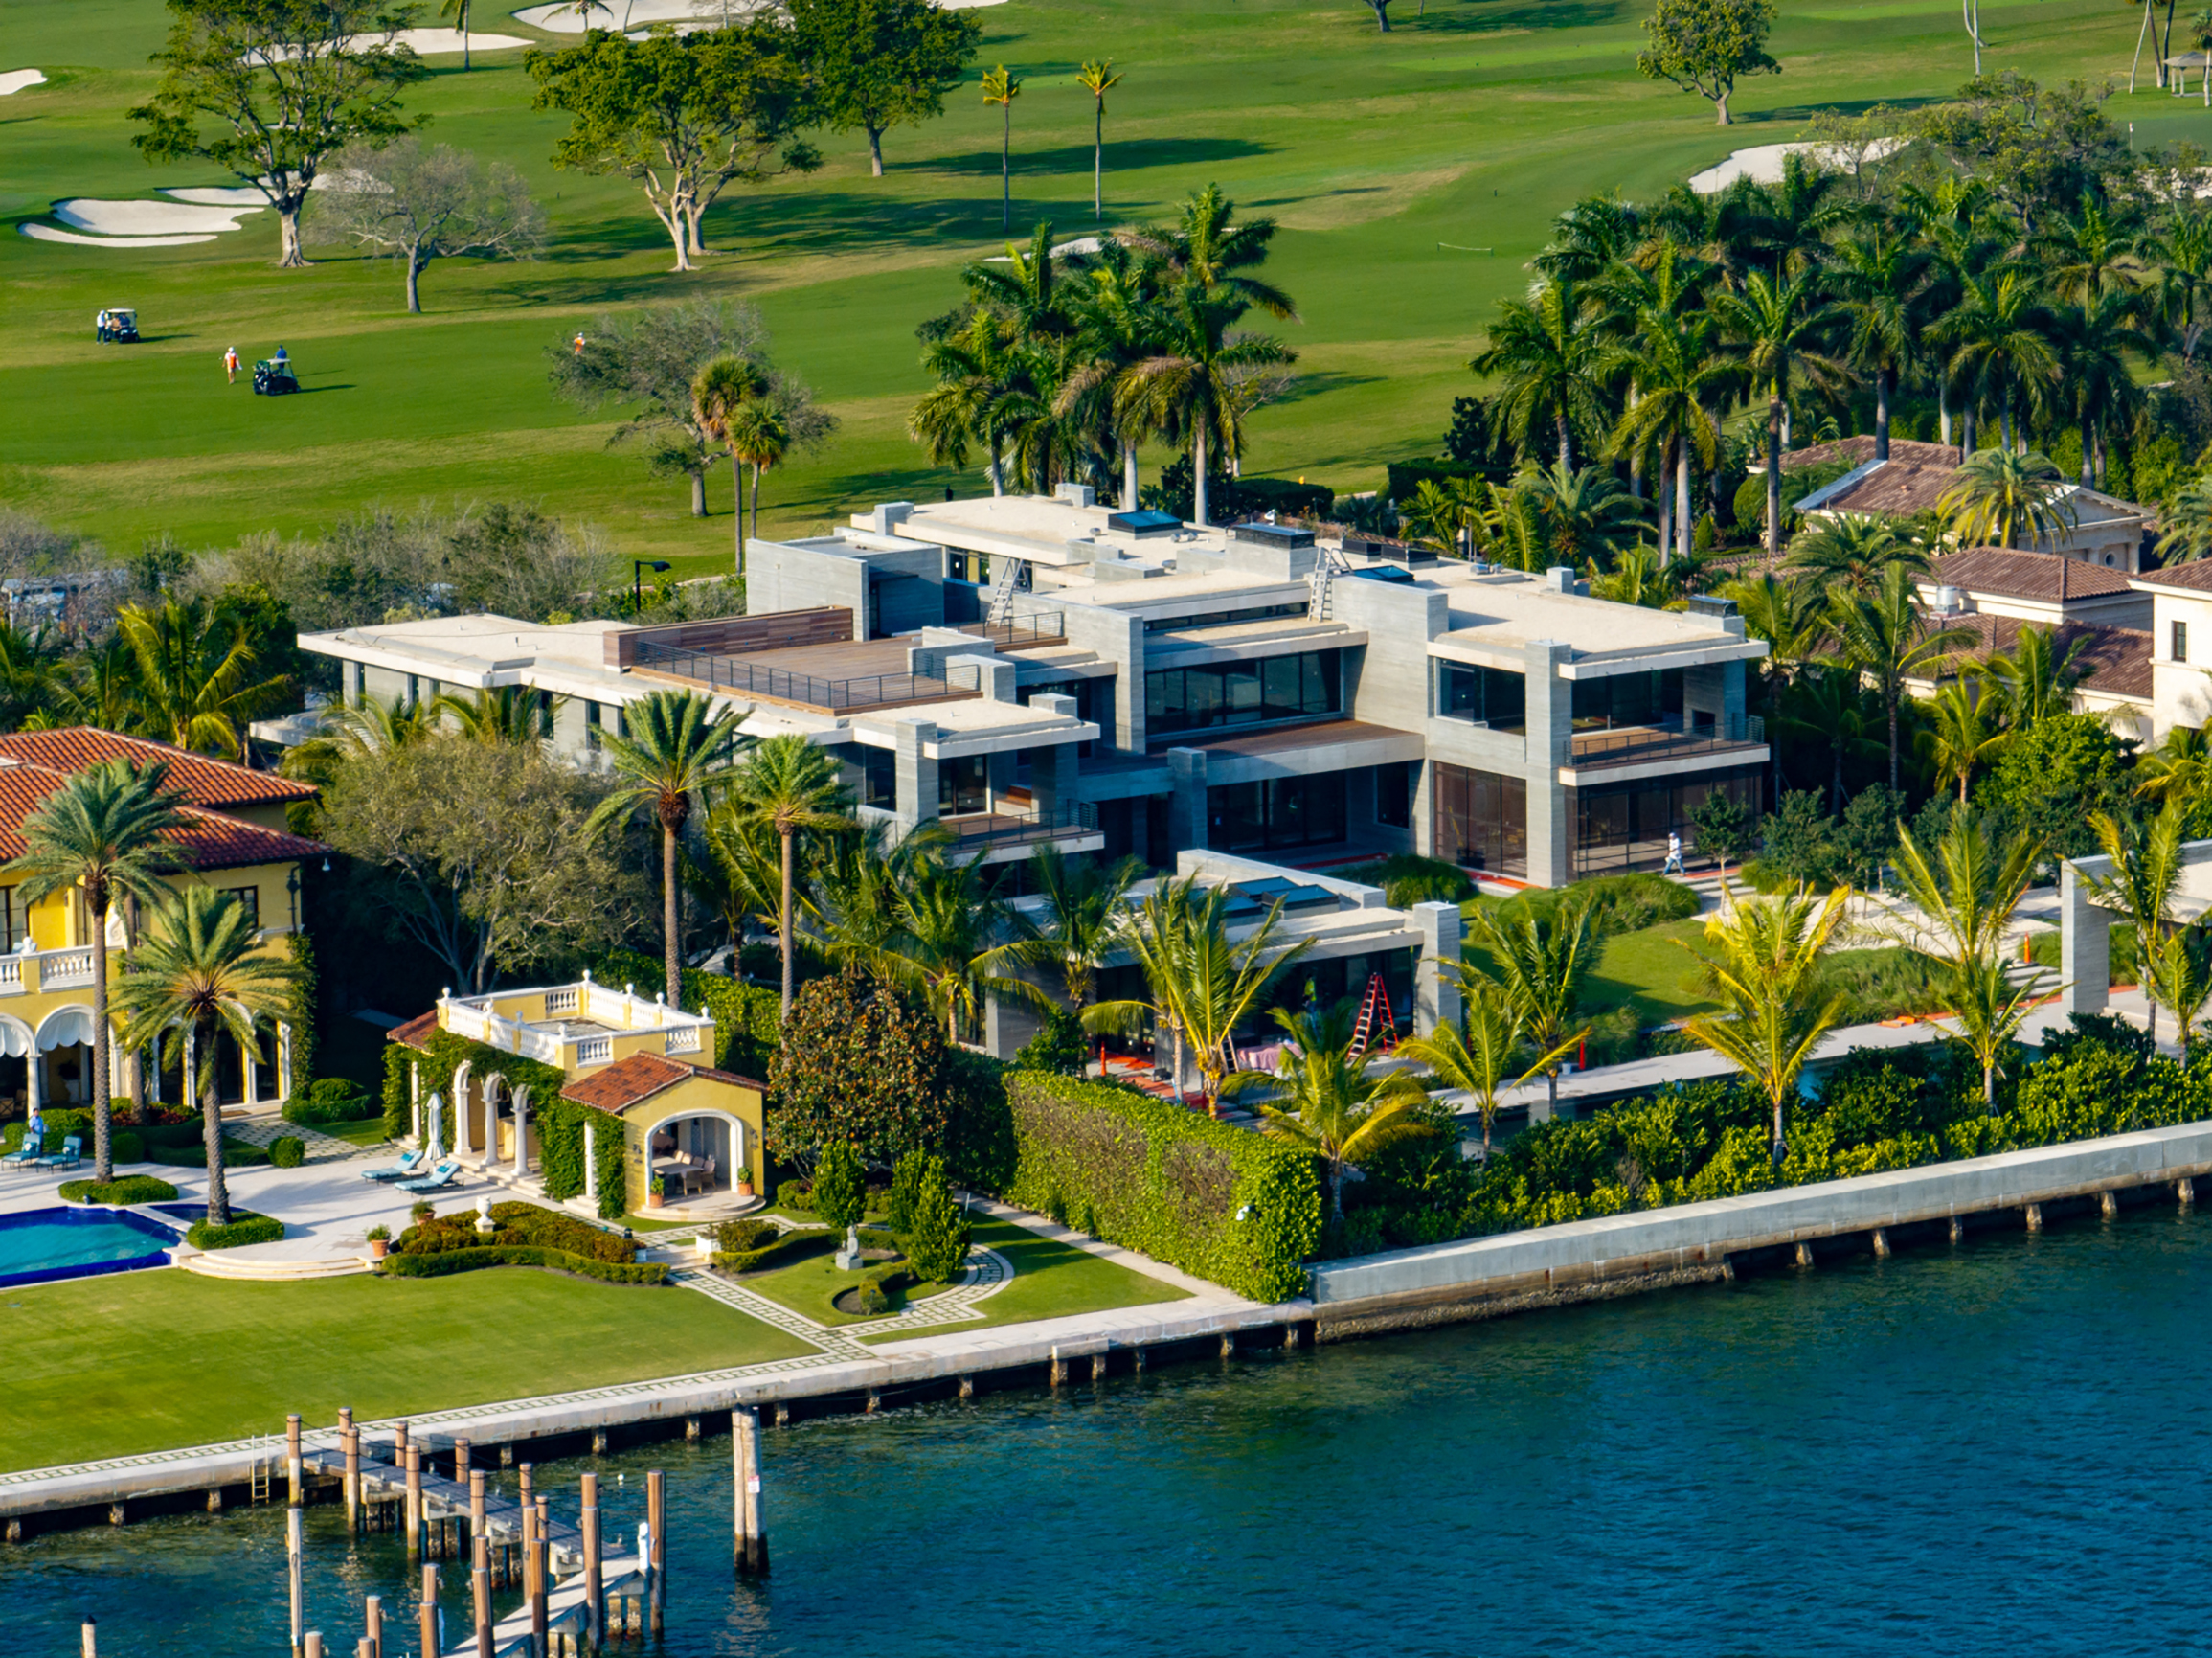 Tom Brady's Miami mansion.